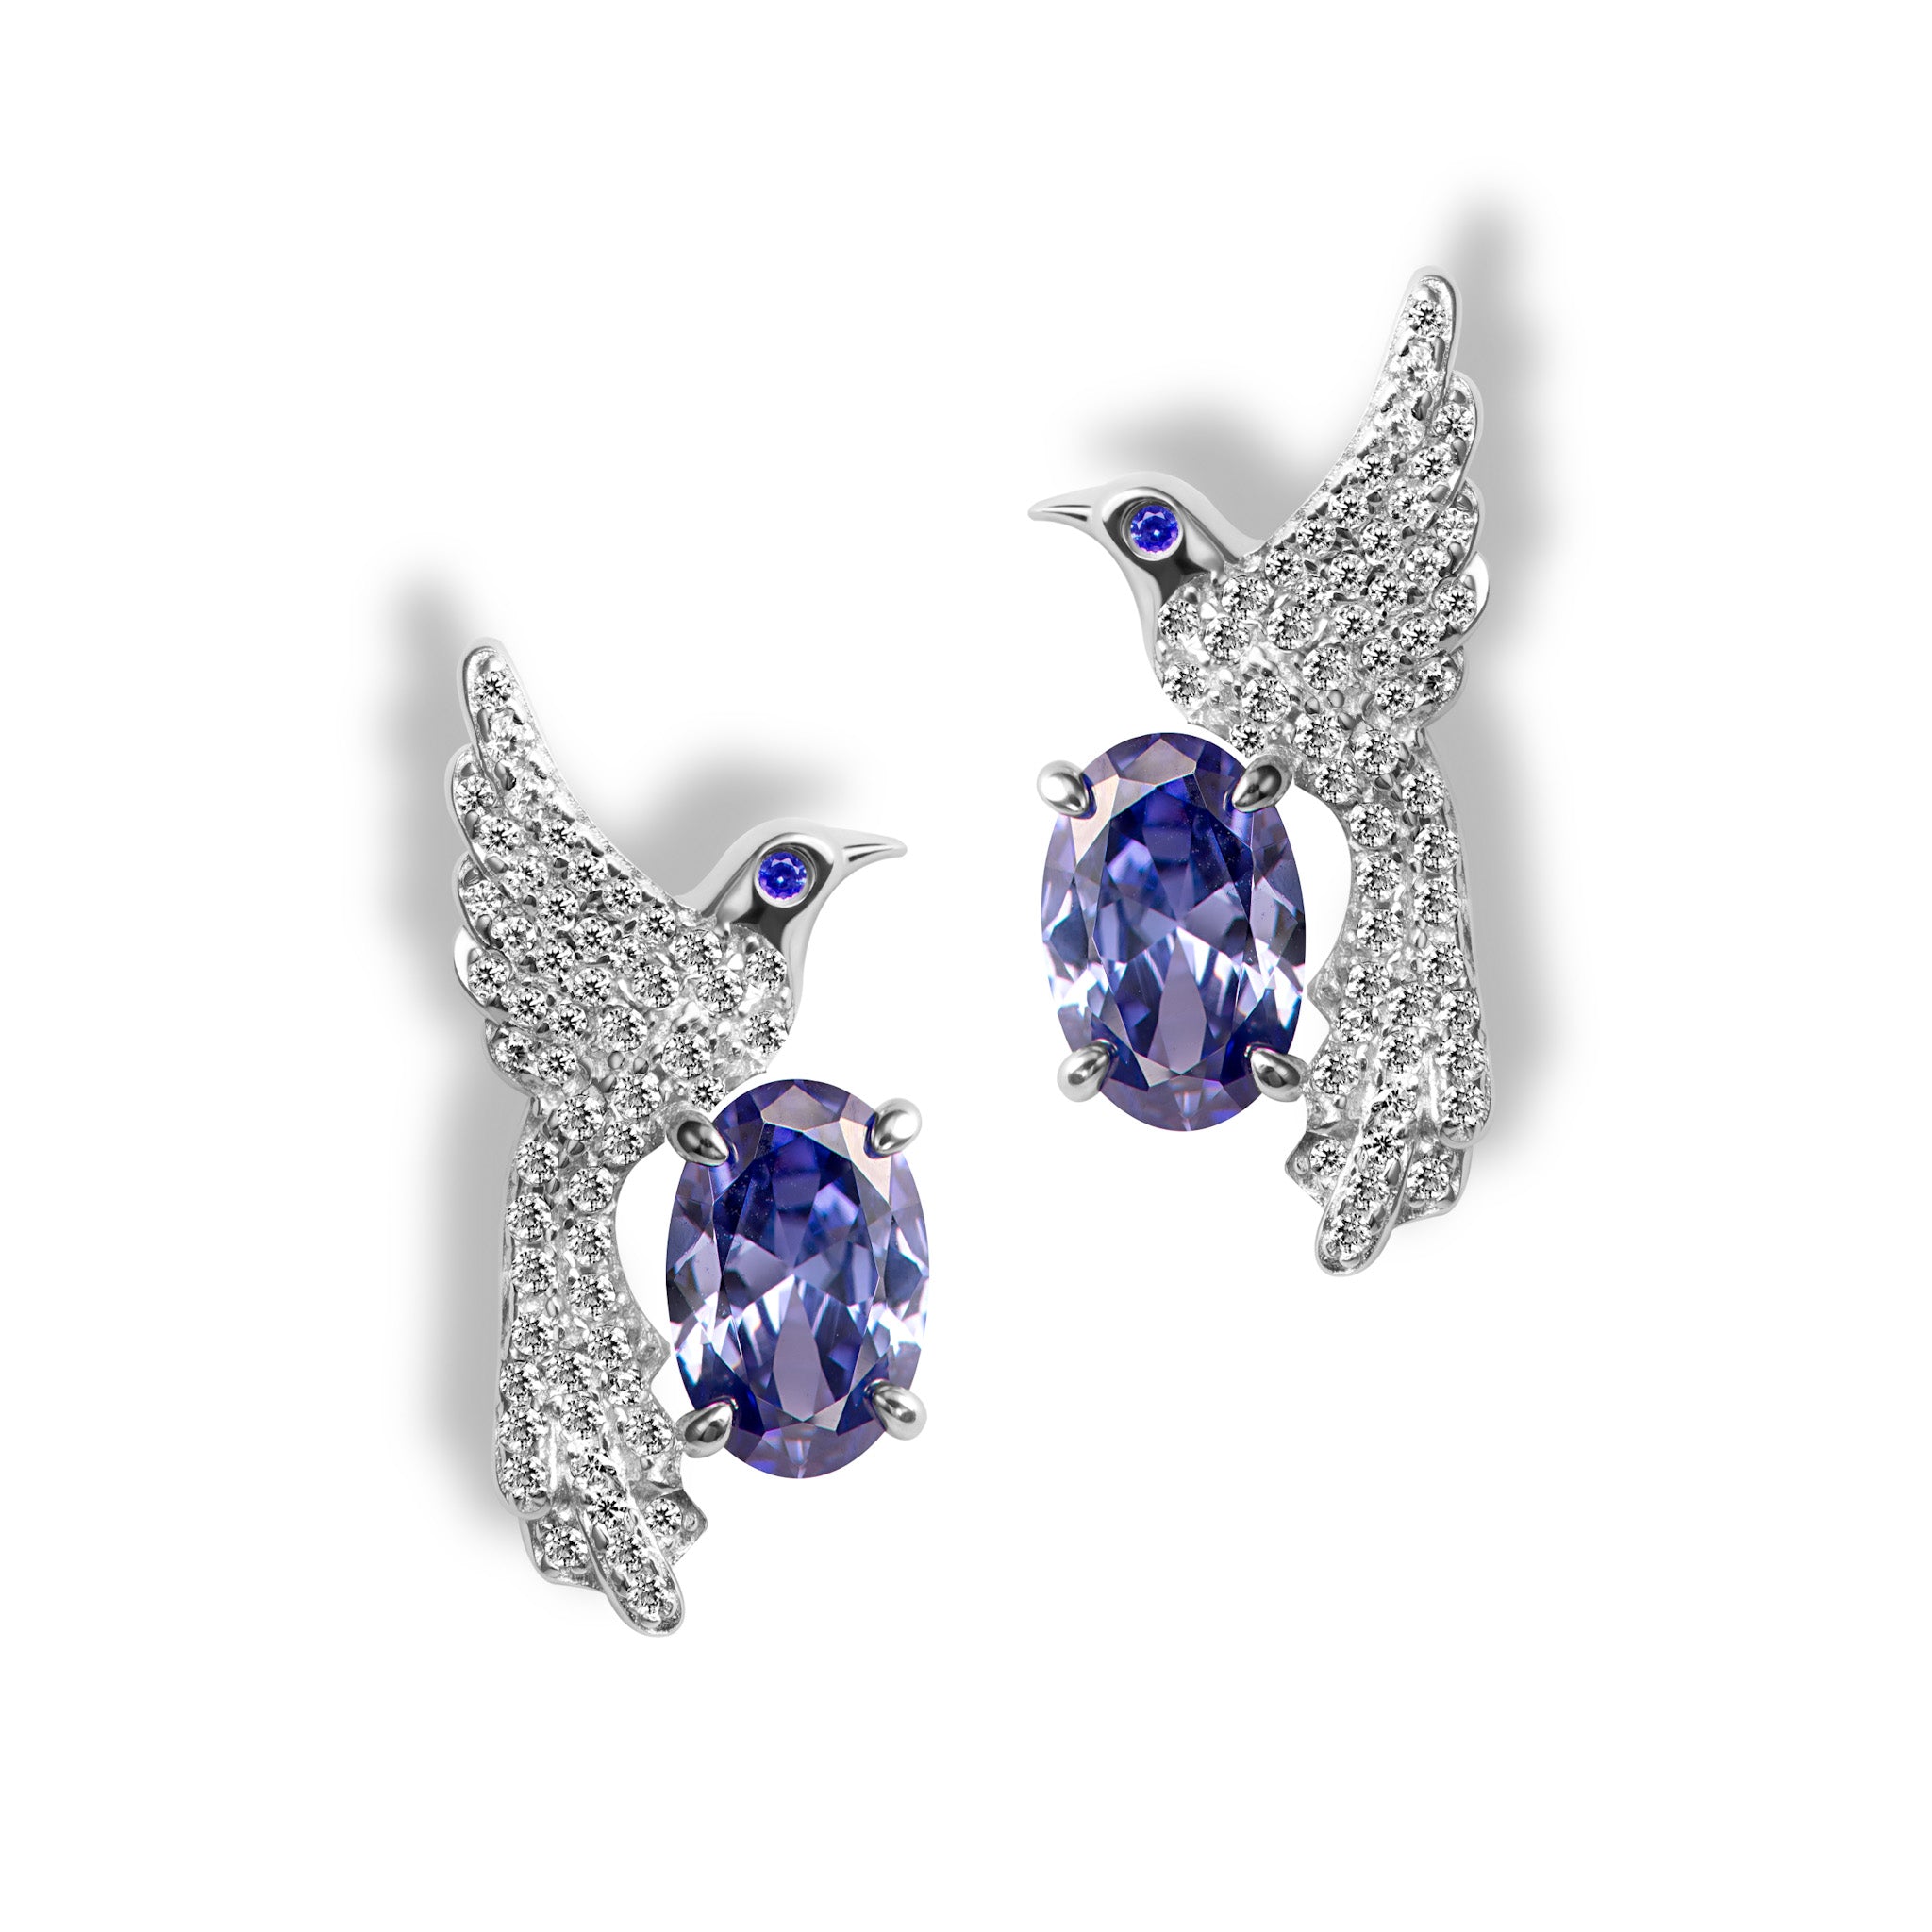 Sterling silver bird sapphire stud earrings